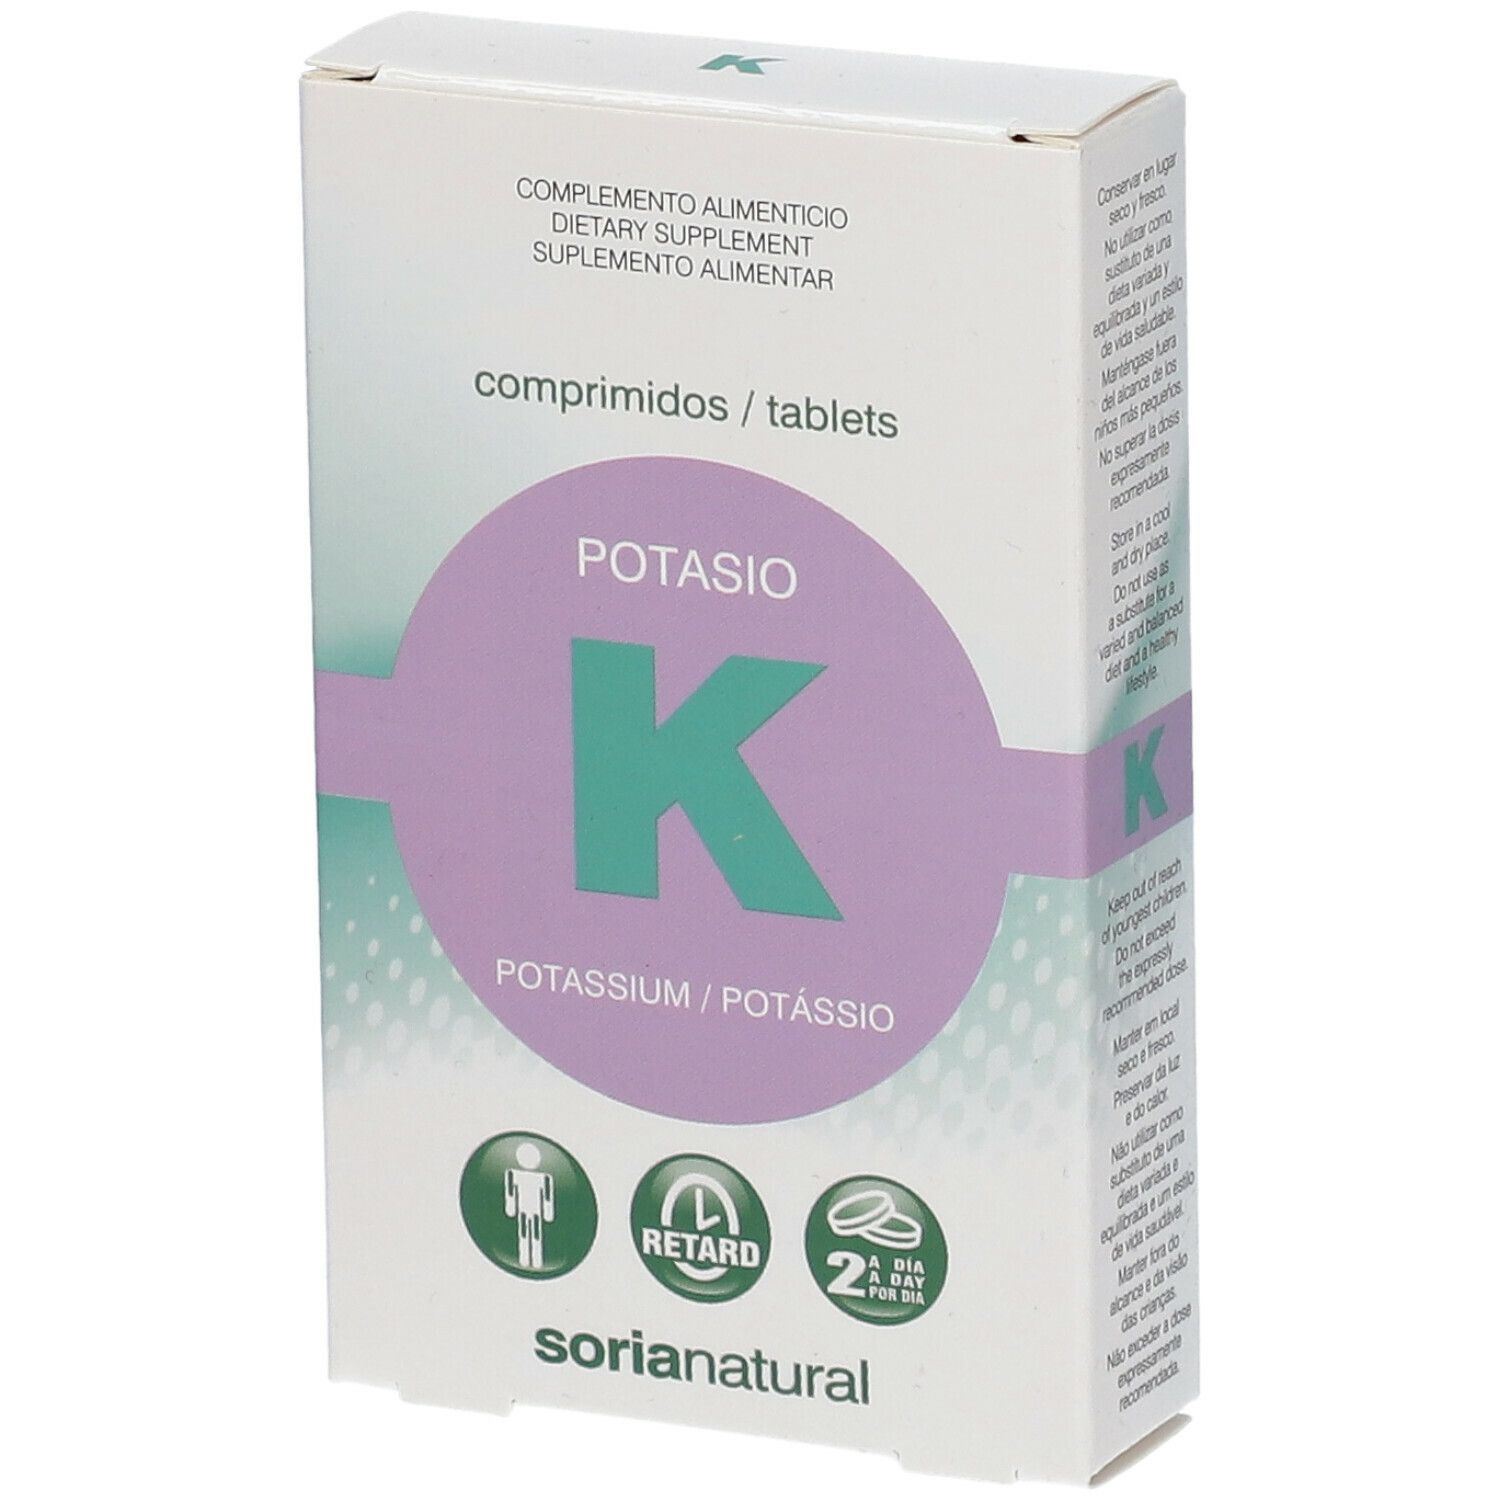 Soria Natural® Potassium retard 360 mg